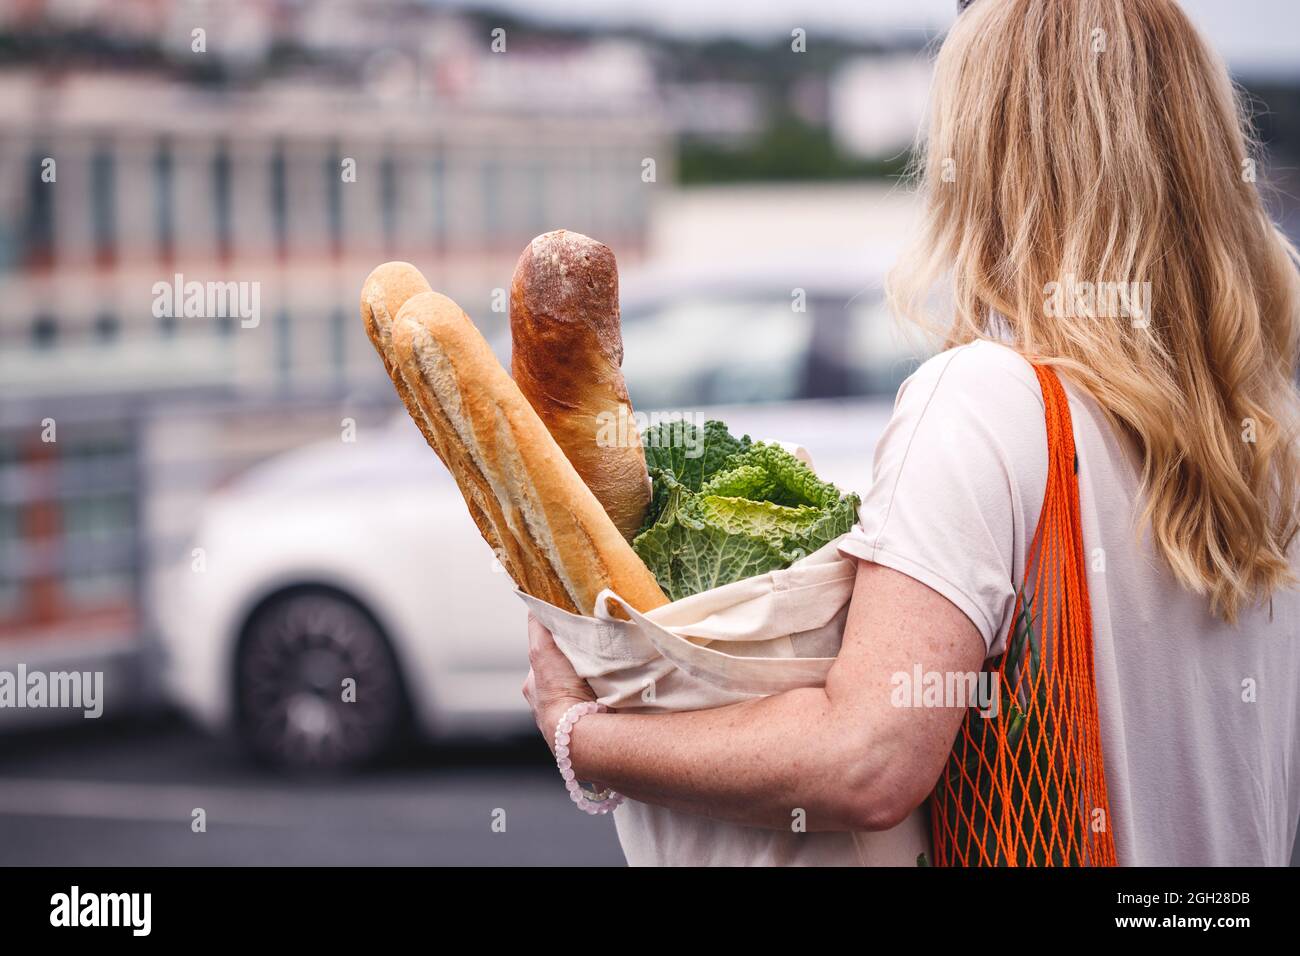 Frau mit Lebensmitteln geht auf einem Supermarkt-Parkplatz zu ihrem Auto. Kunden mit wiederverwendbaren Taschen ehren einen nachhaltigen Lebensstil ohne Abfall Stockfoto